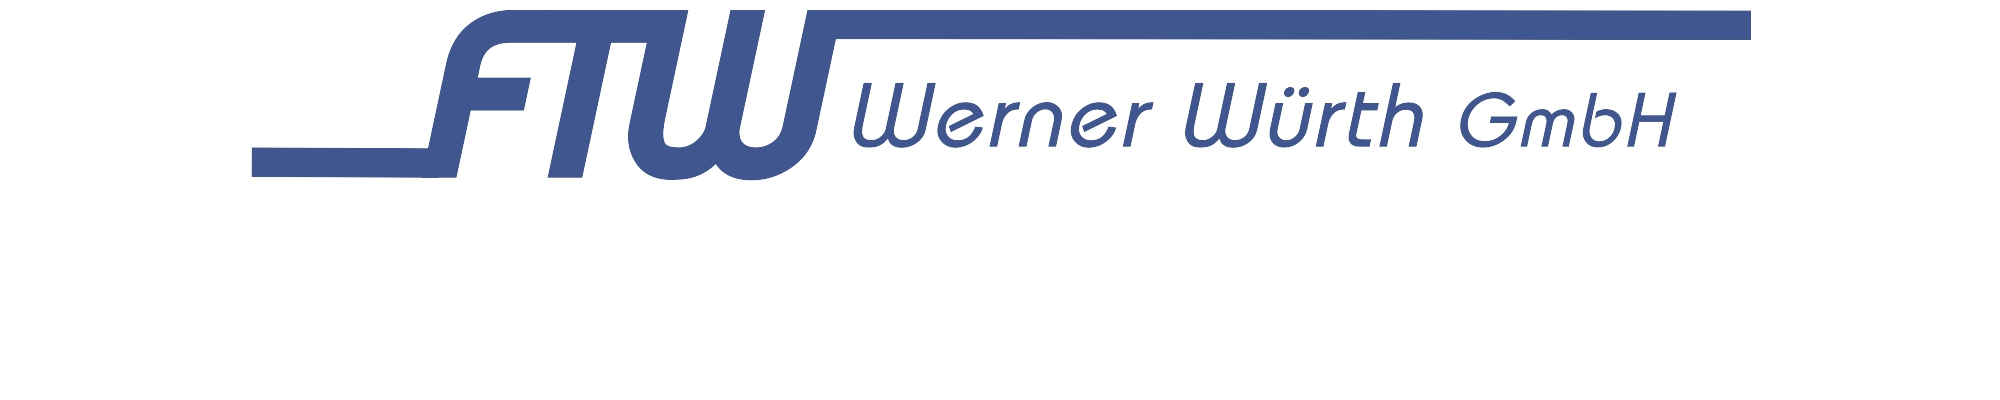 FTW Werner Würth Online Shop